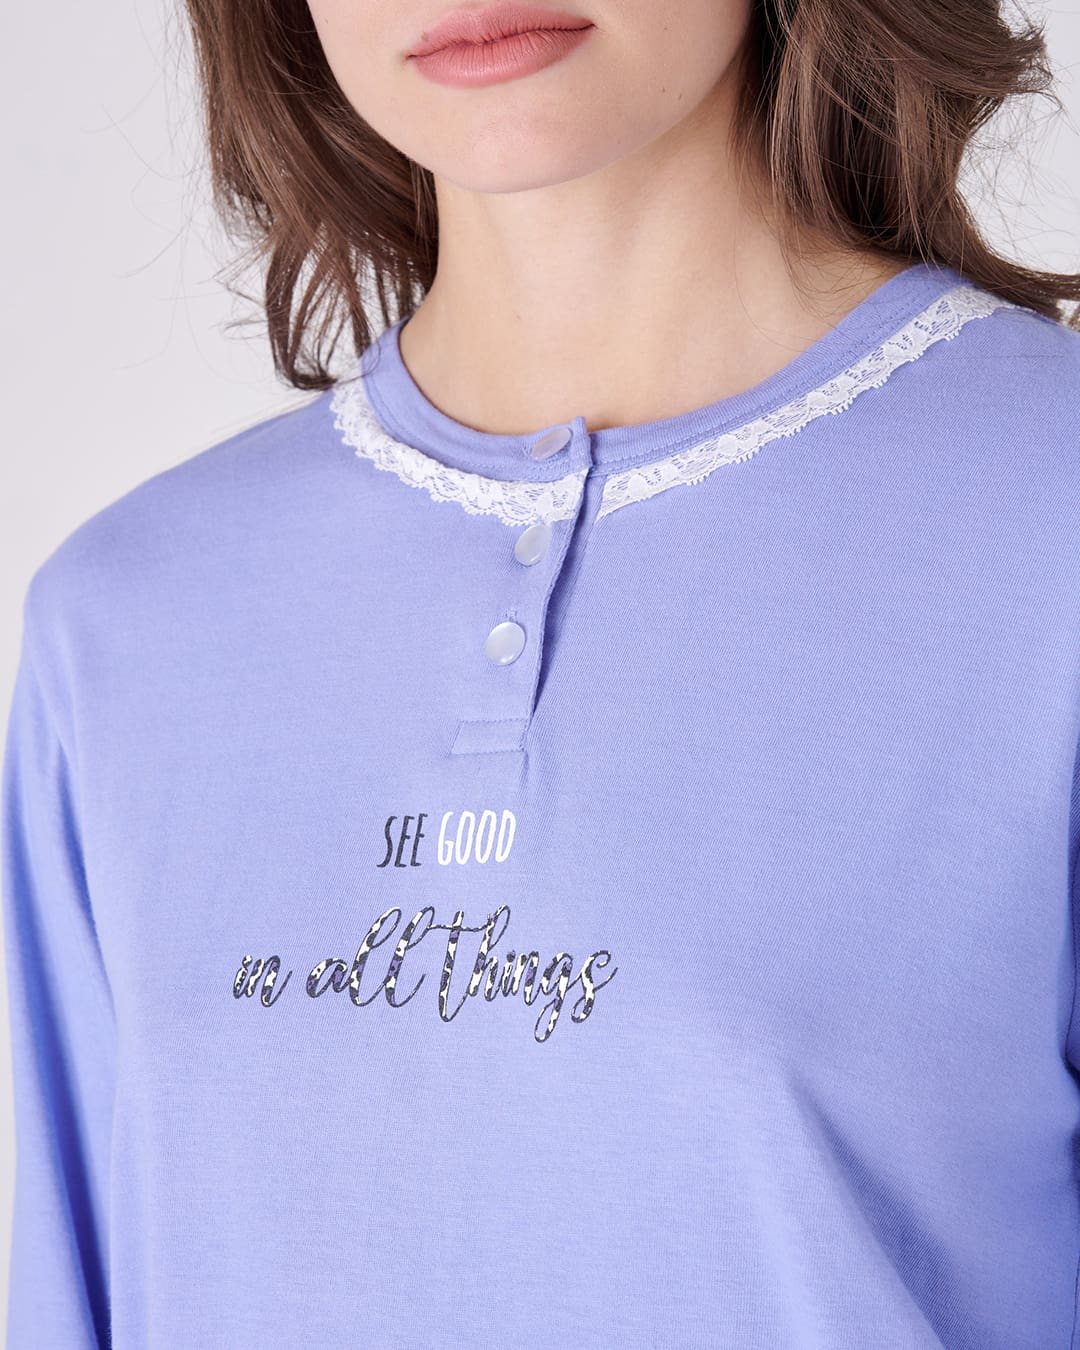 Dettaglio scritta "see god in all things" sulla maglia del pigiama lungo da donna "SEE GOOD"